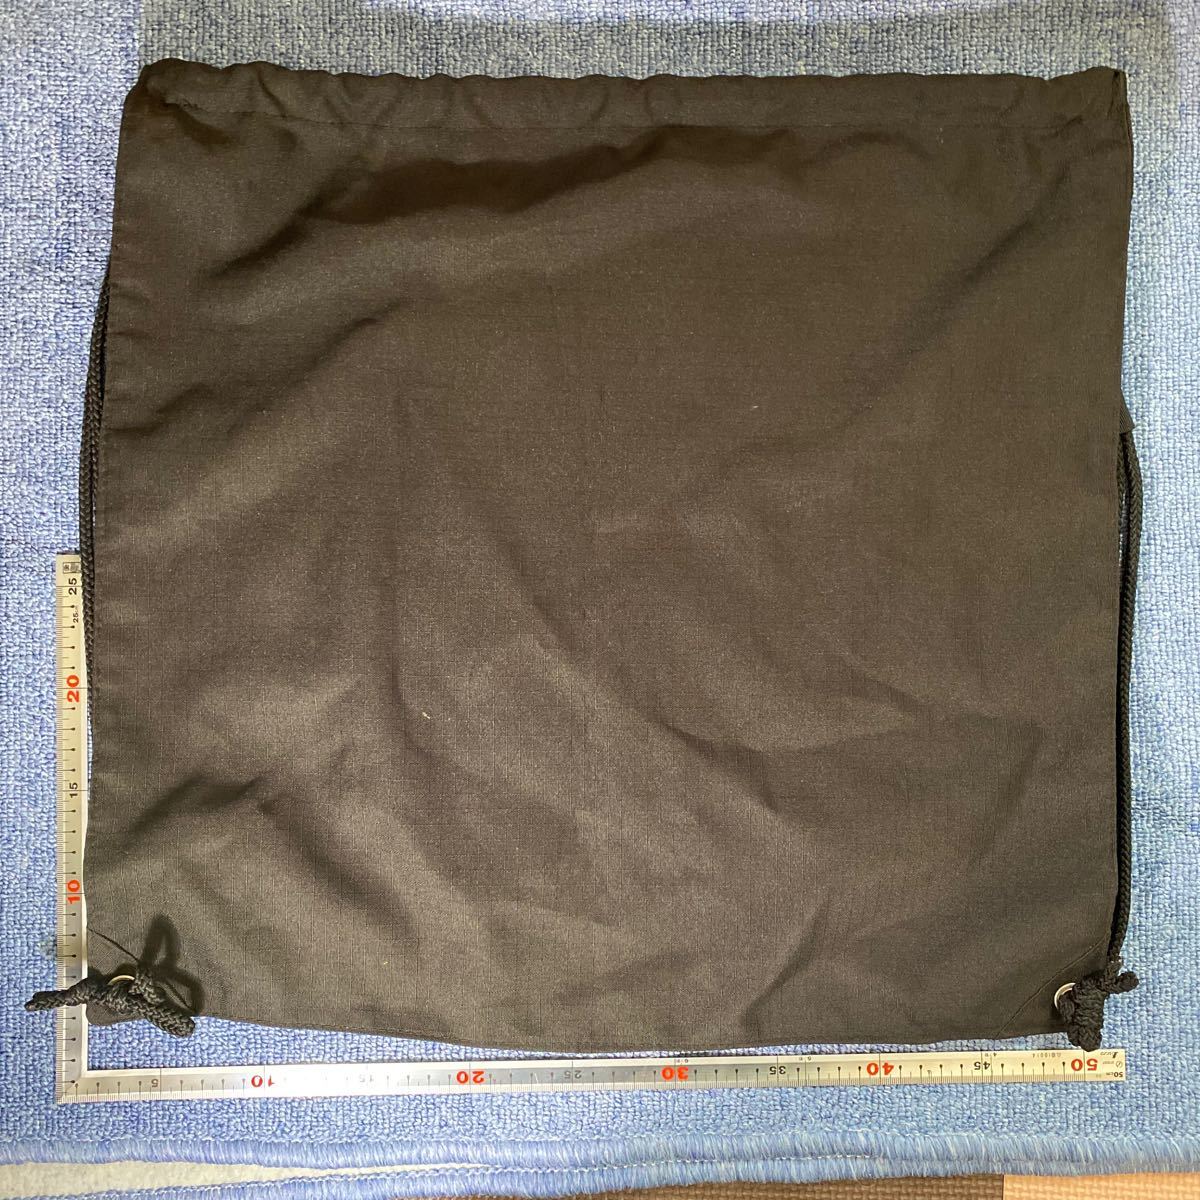  McLAREN McLaren коляска принадлежности sap упаковка napsak мешочек рюкзак портфель черный 